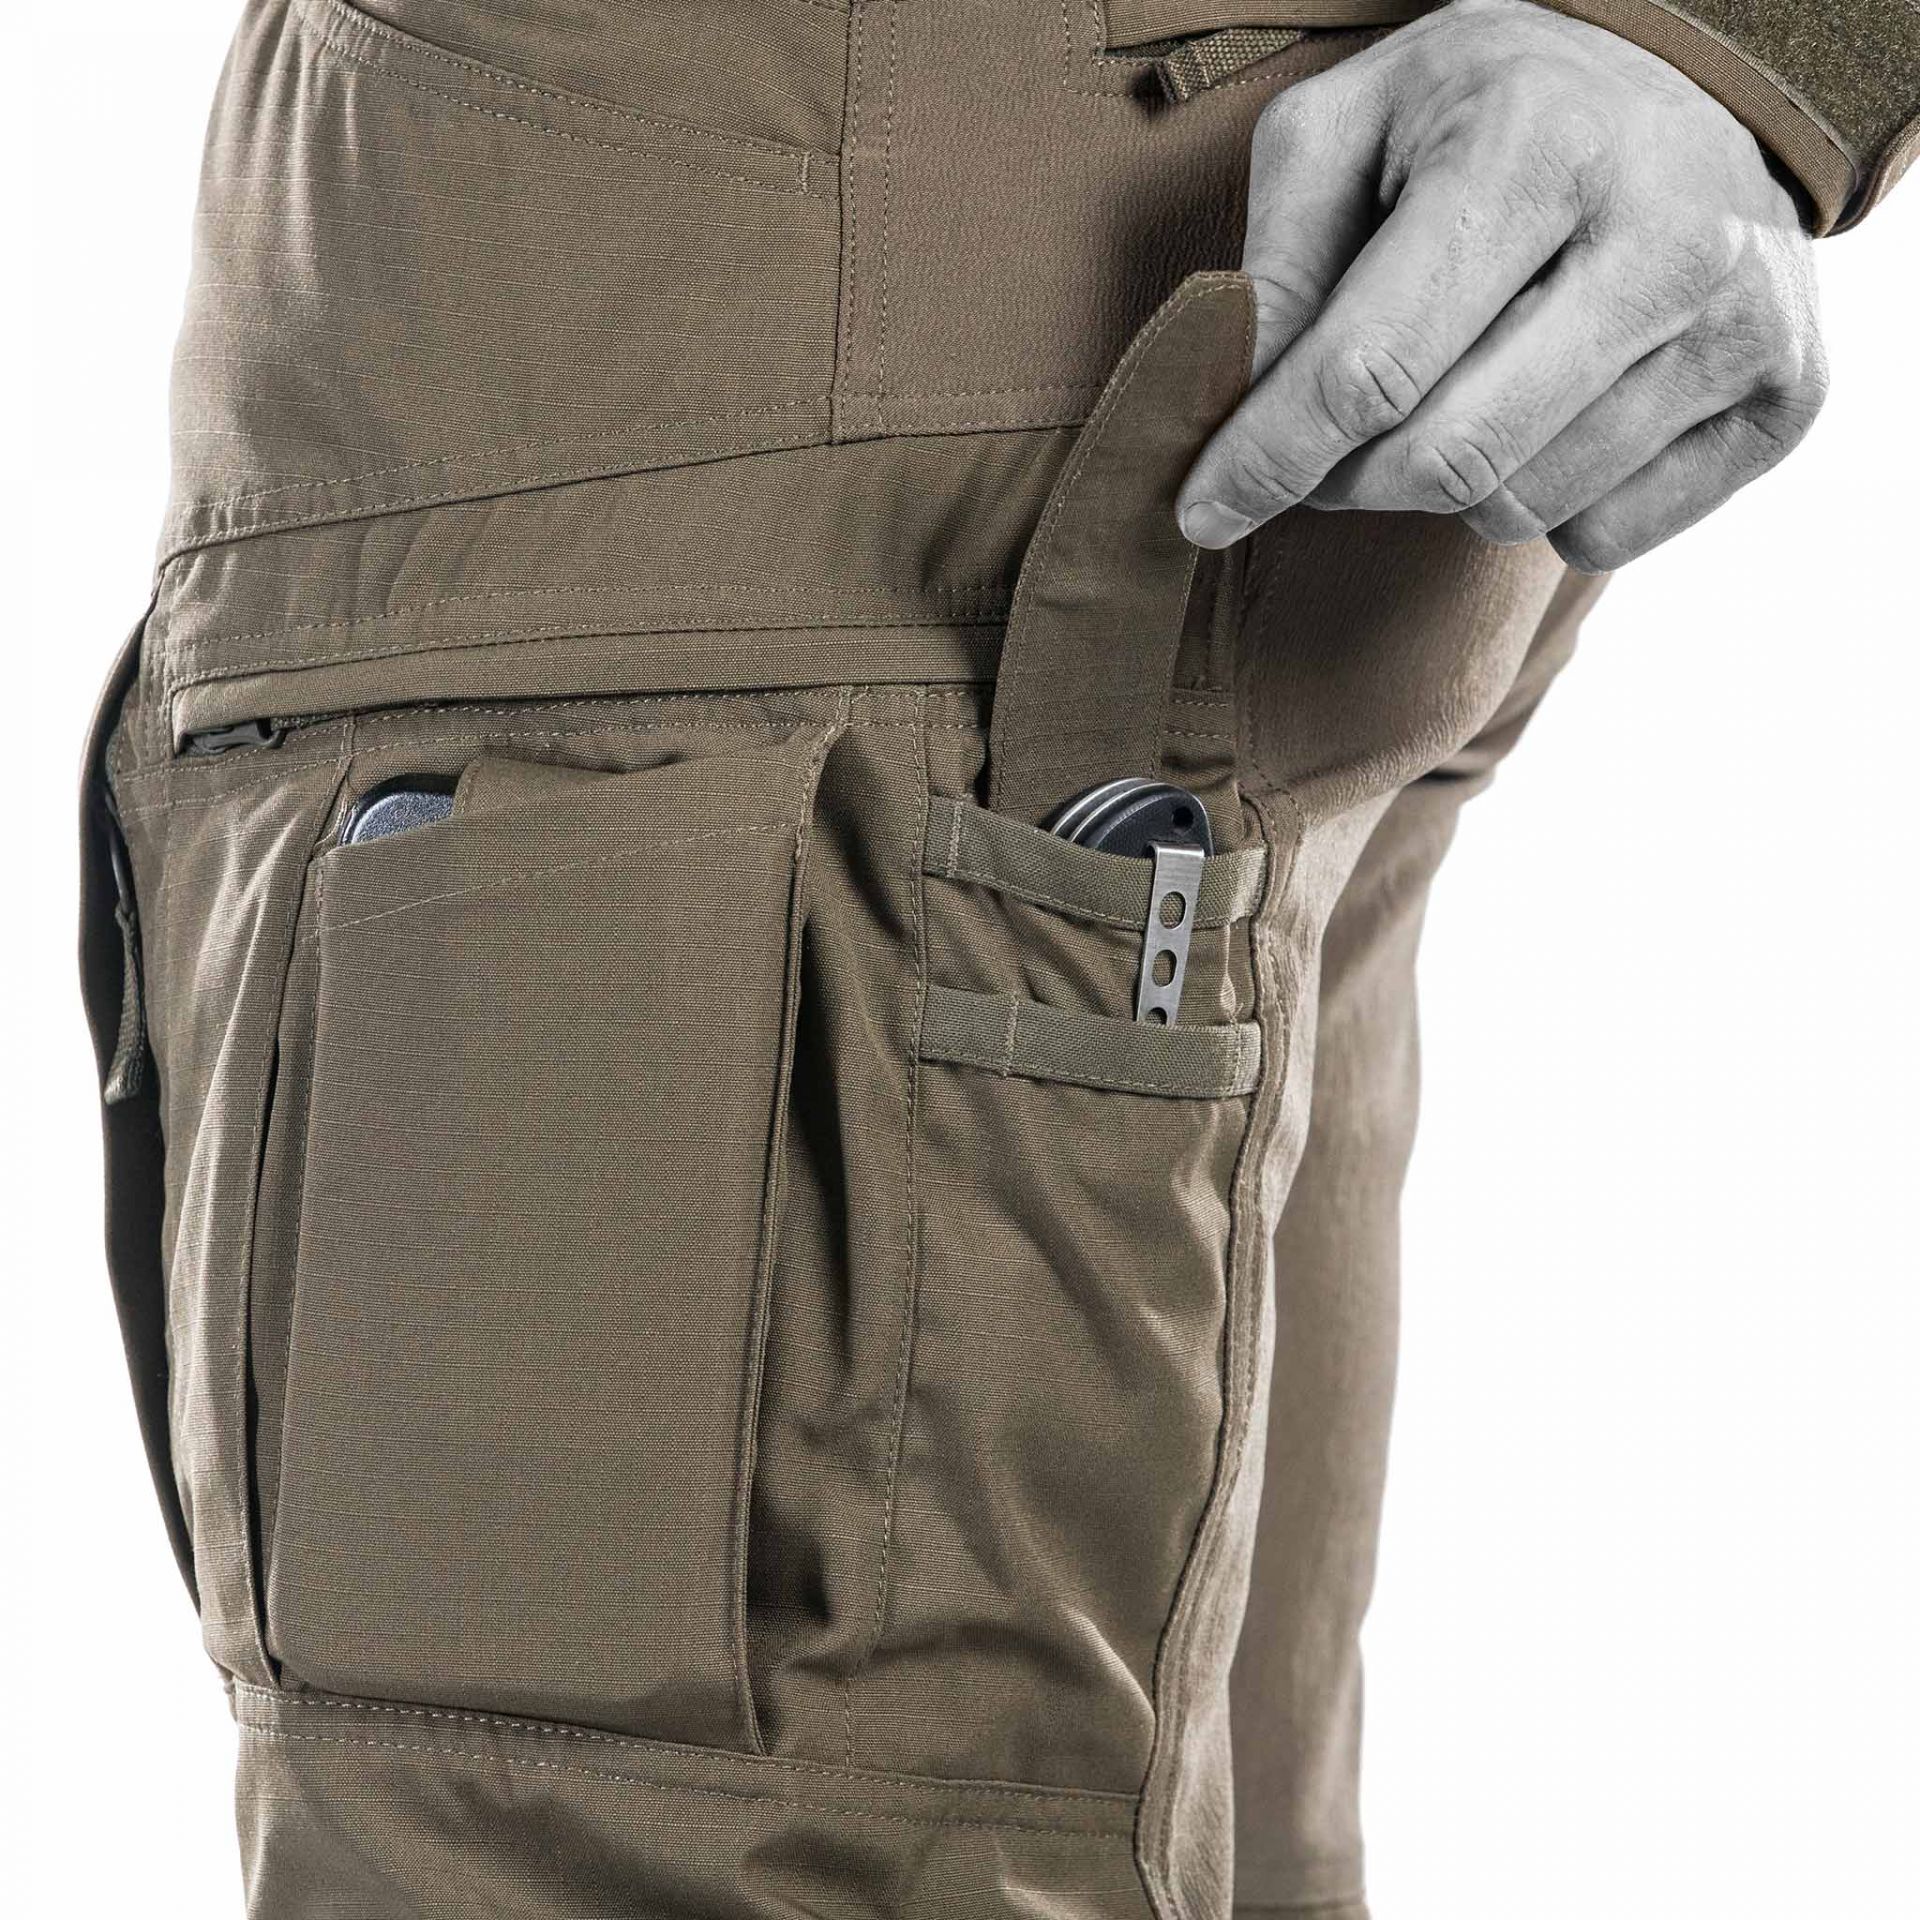 Striker XT Gen.3 Combat Pants | Best combat pants for military & LE ops